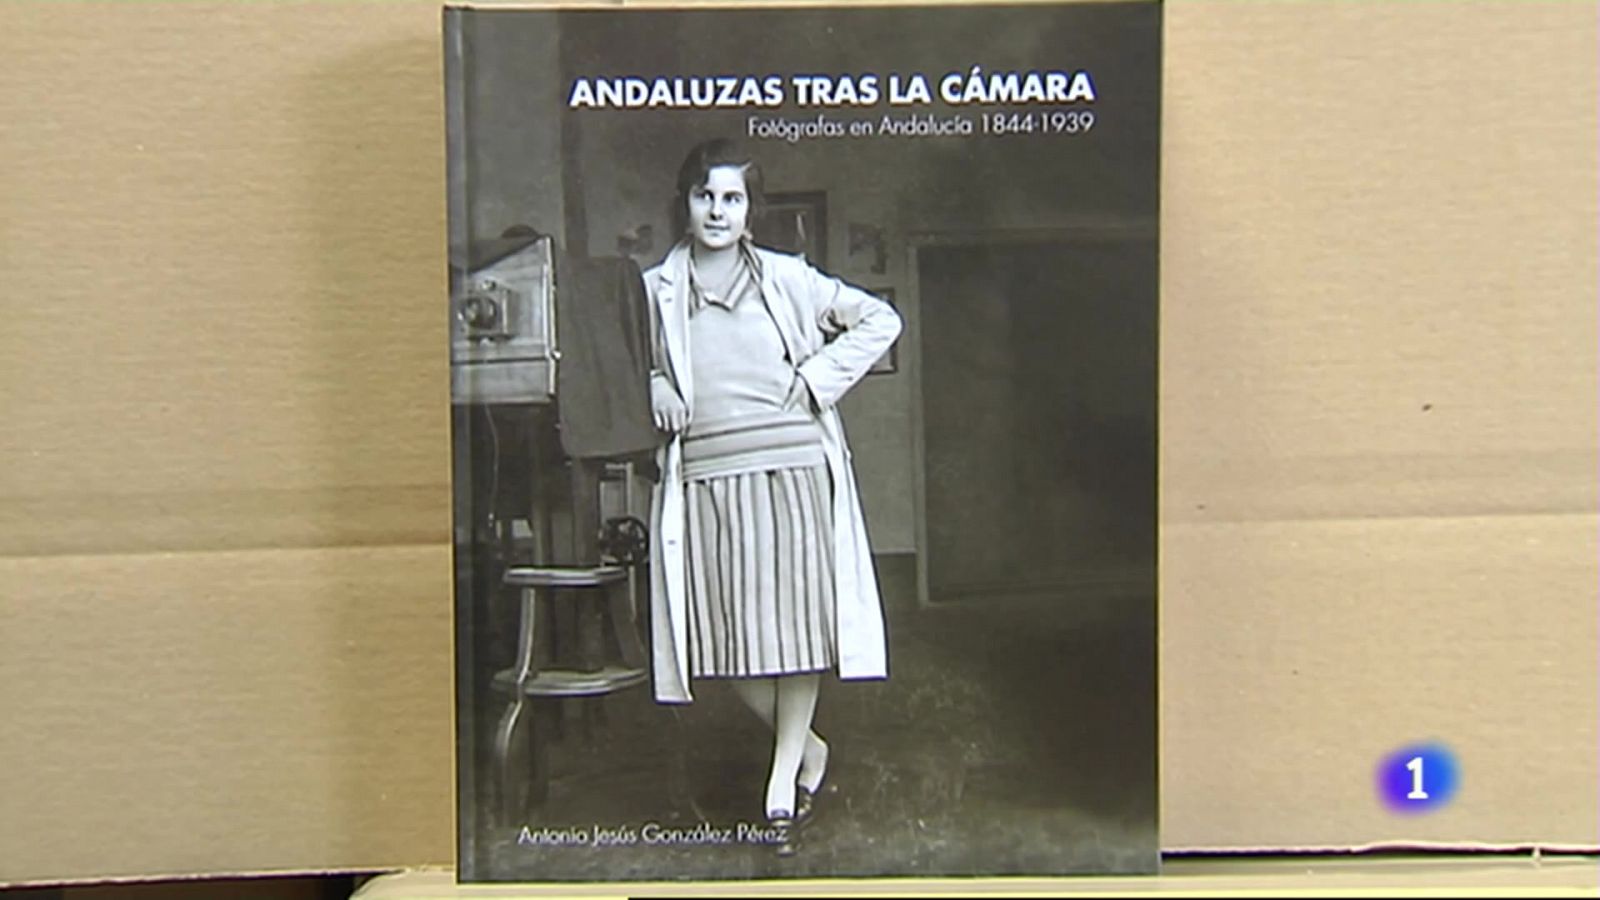 Un libro del Centro Andaluz de Fotografía pretende ahora sacar a la luz a mujeres fotógrafas andaluzas de la Historia.

